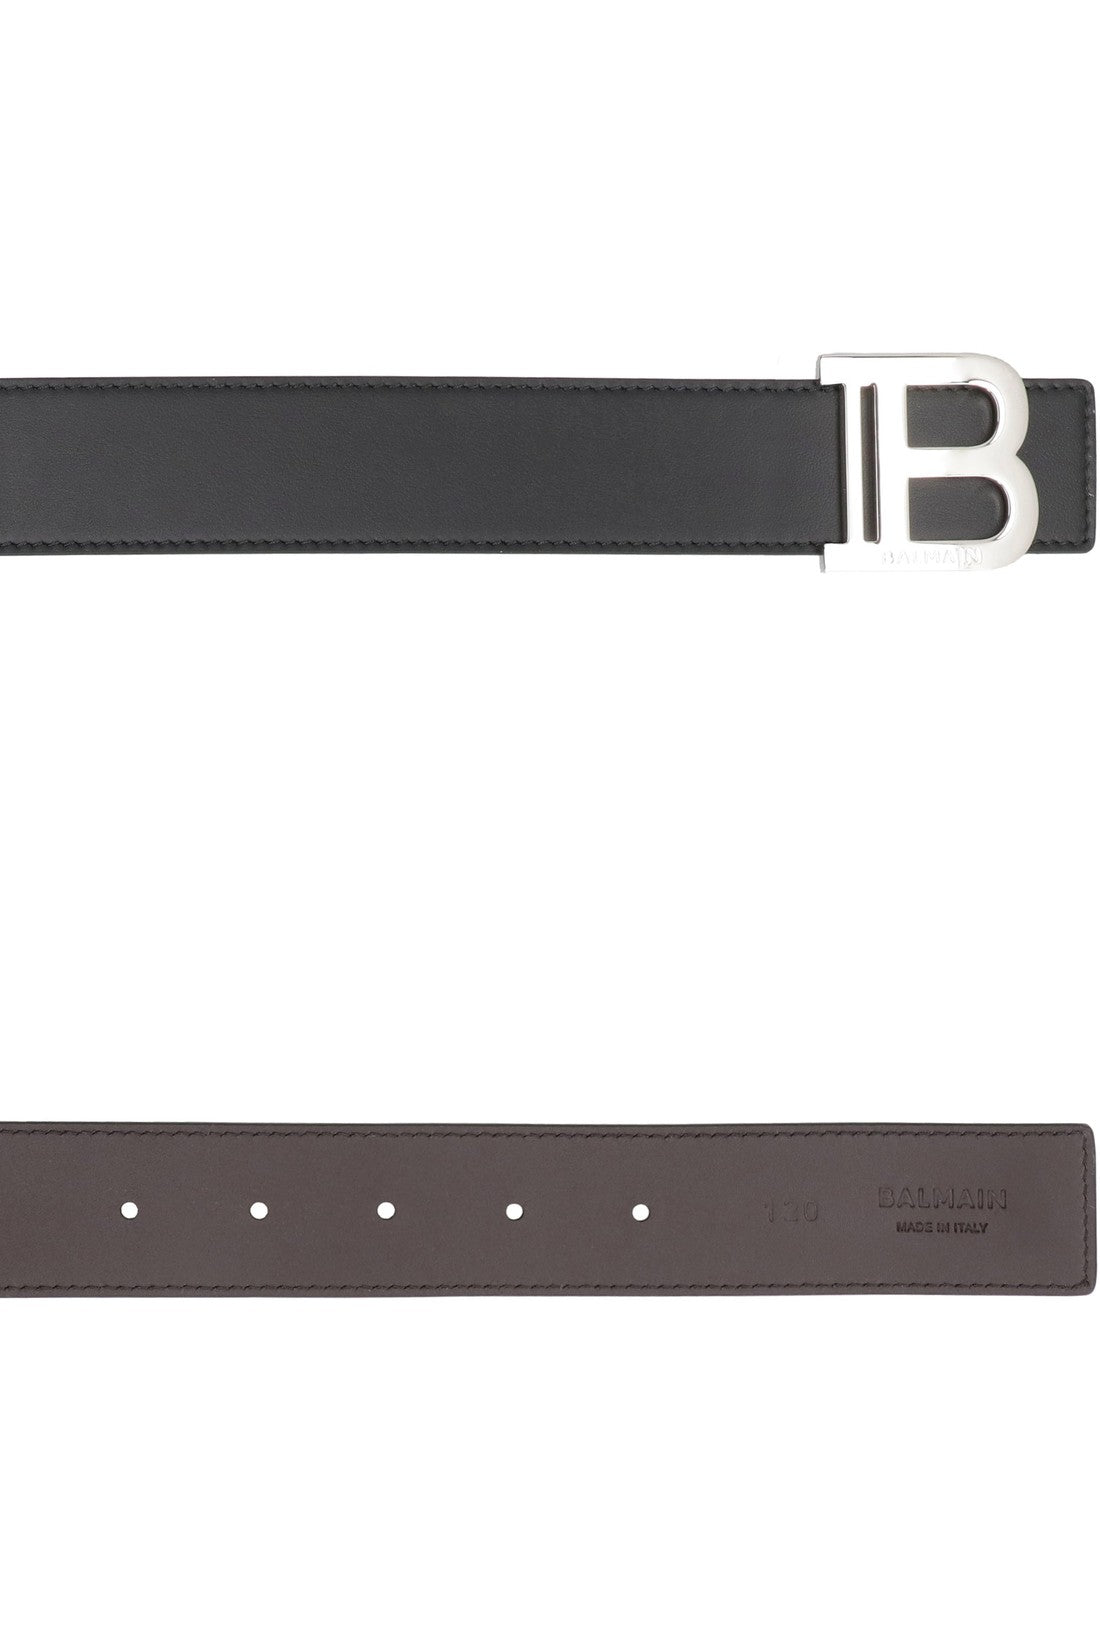 Balmain-OUTLET-SALE-Leather belt-ARCHIVIST